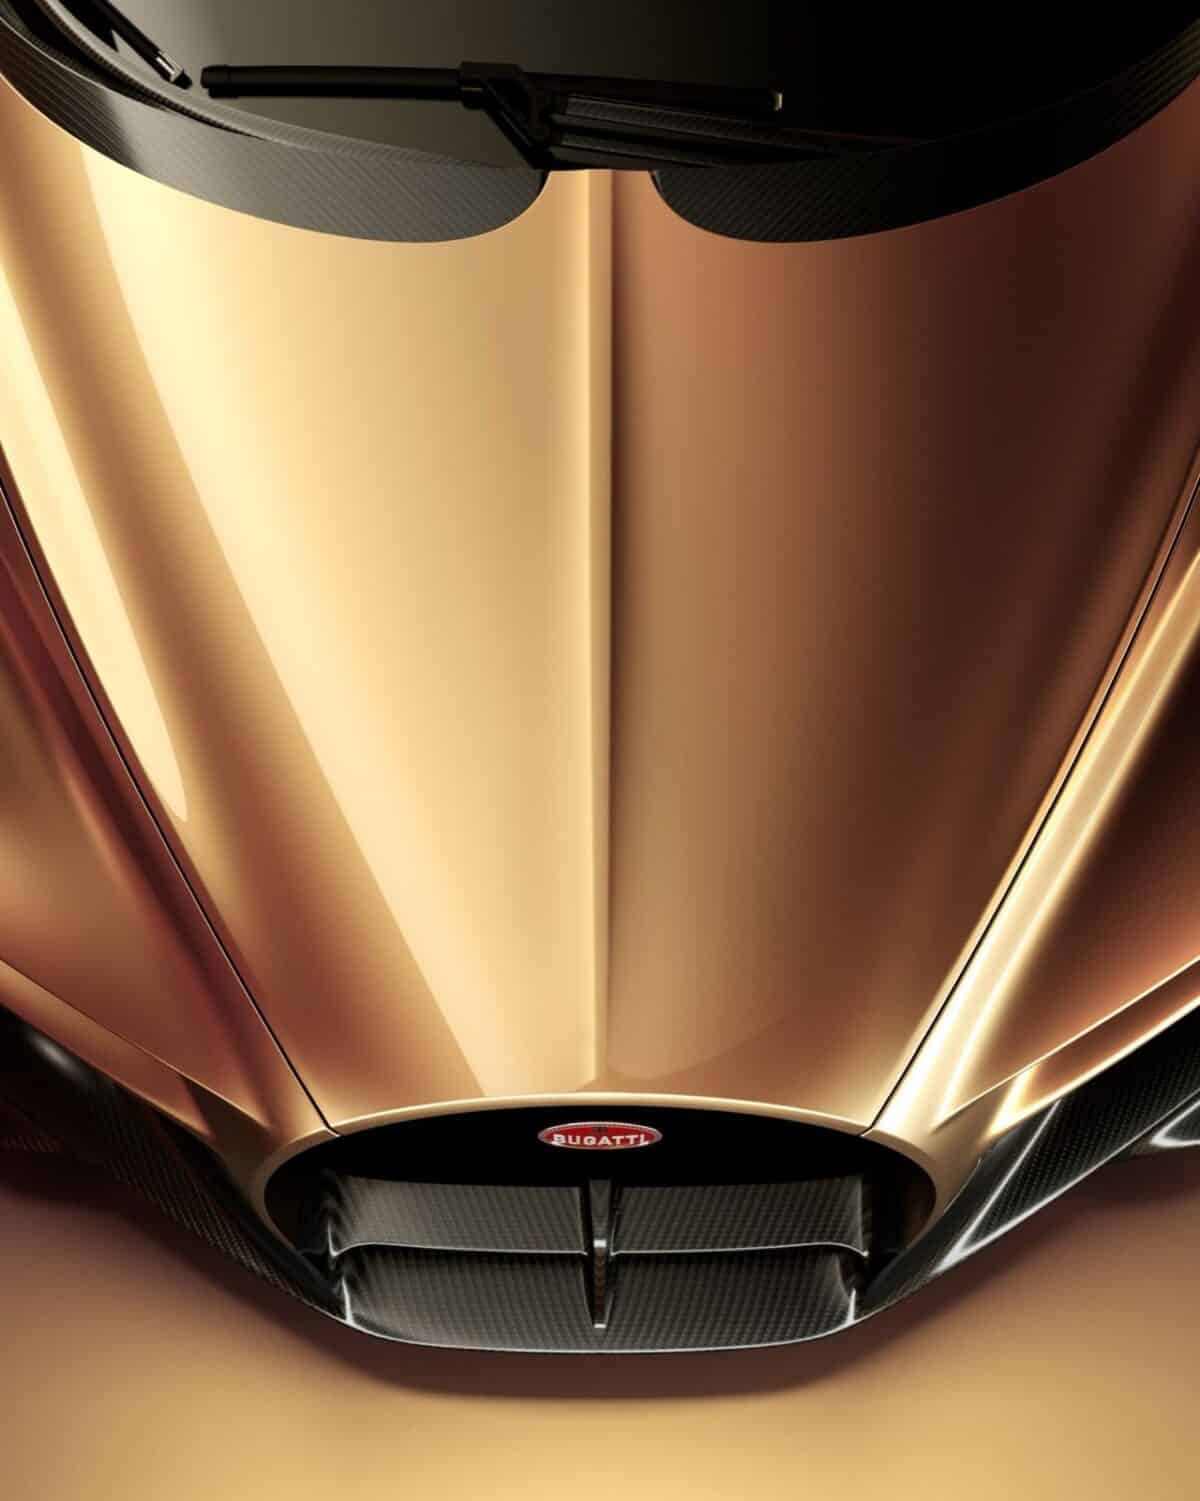 Bugatti W16 Mistral in gold